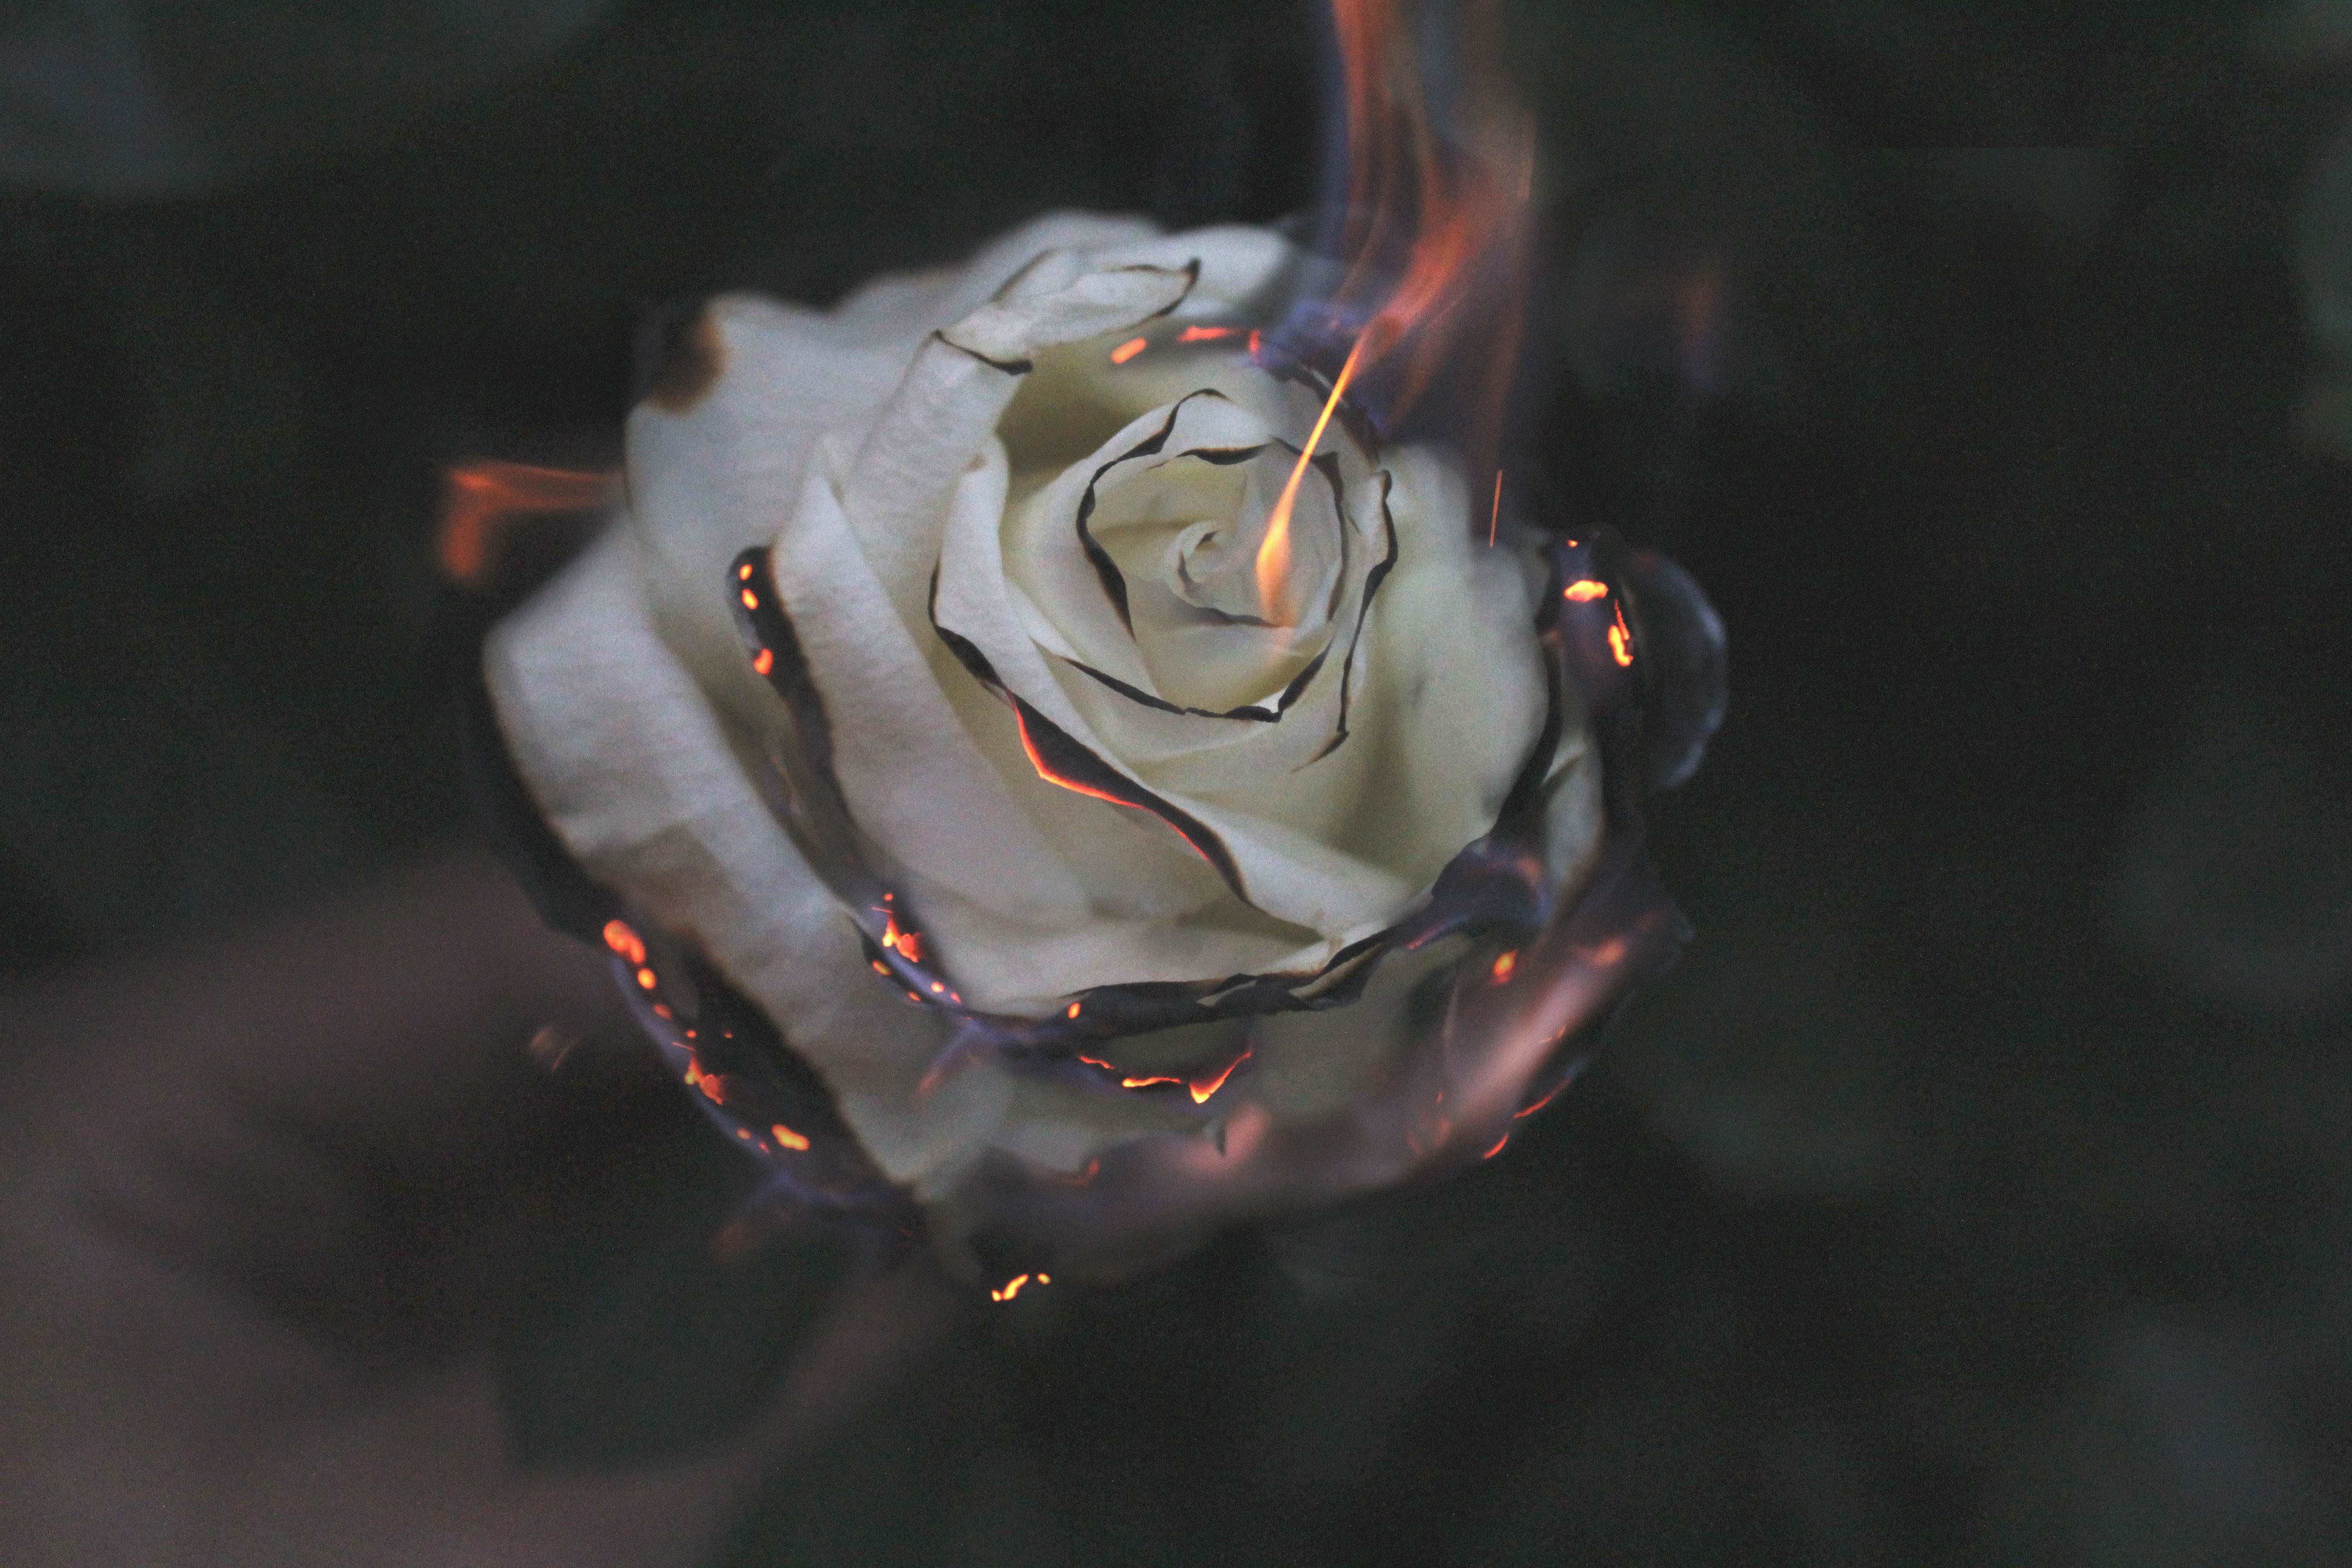 Image of a burning rose